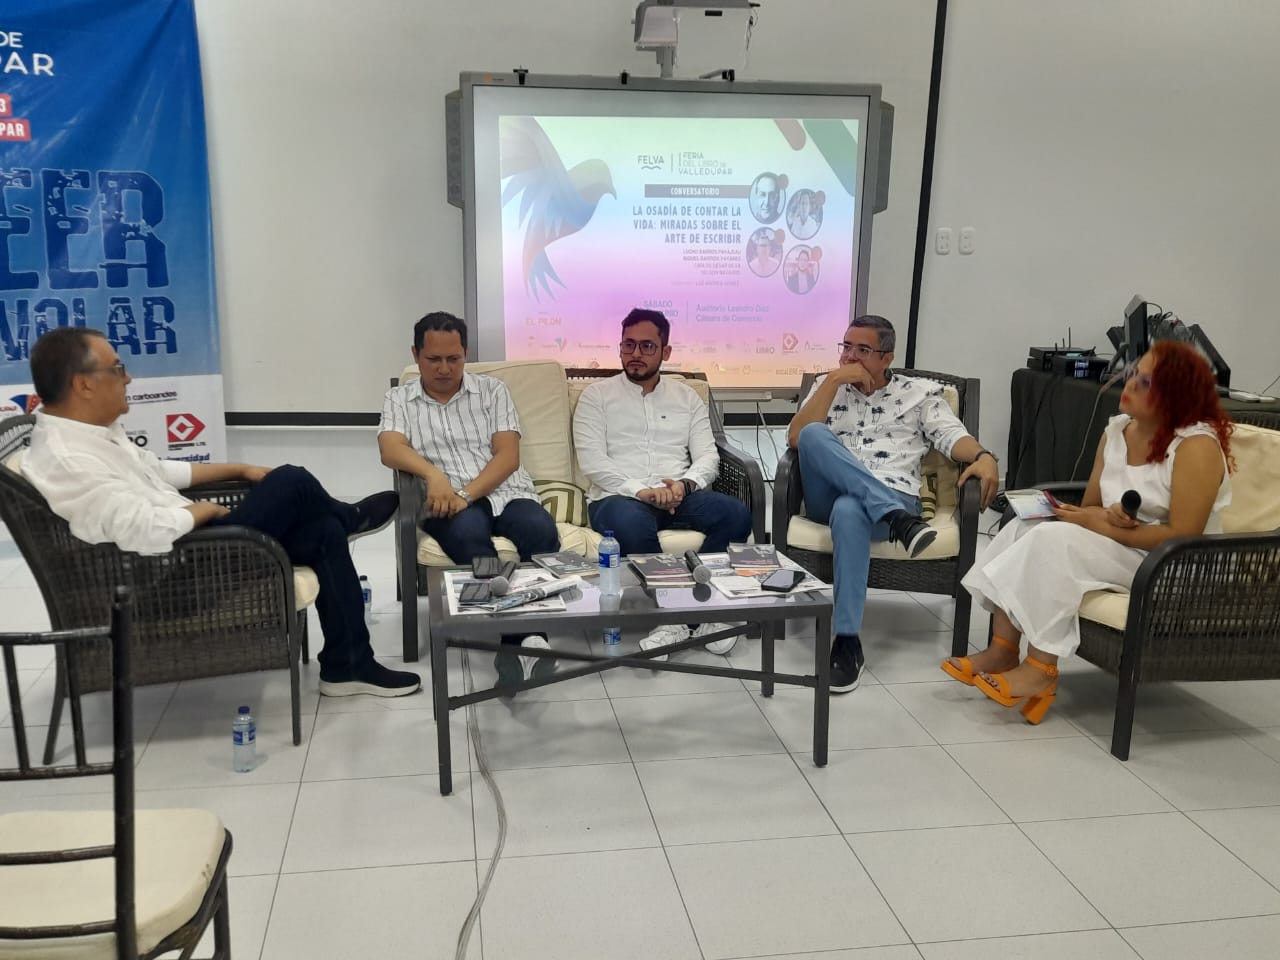 Los cuatro escritores se reunieron en el conversatorio realizado en el auditorio Leandro Díaz de la Cámara de Comercio en el marco de la primera Feria del Libro de Valledupar. /Cortesía. 